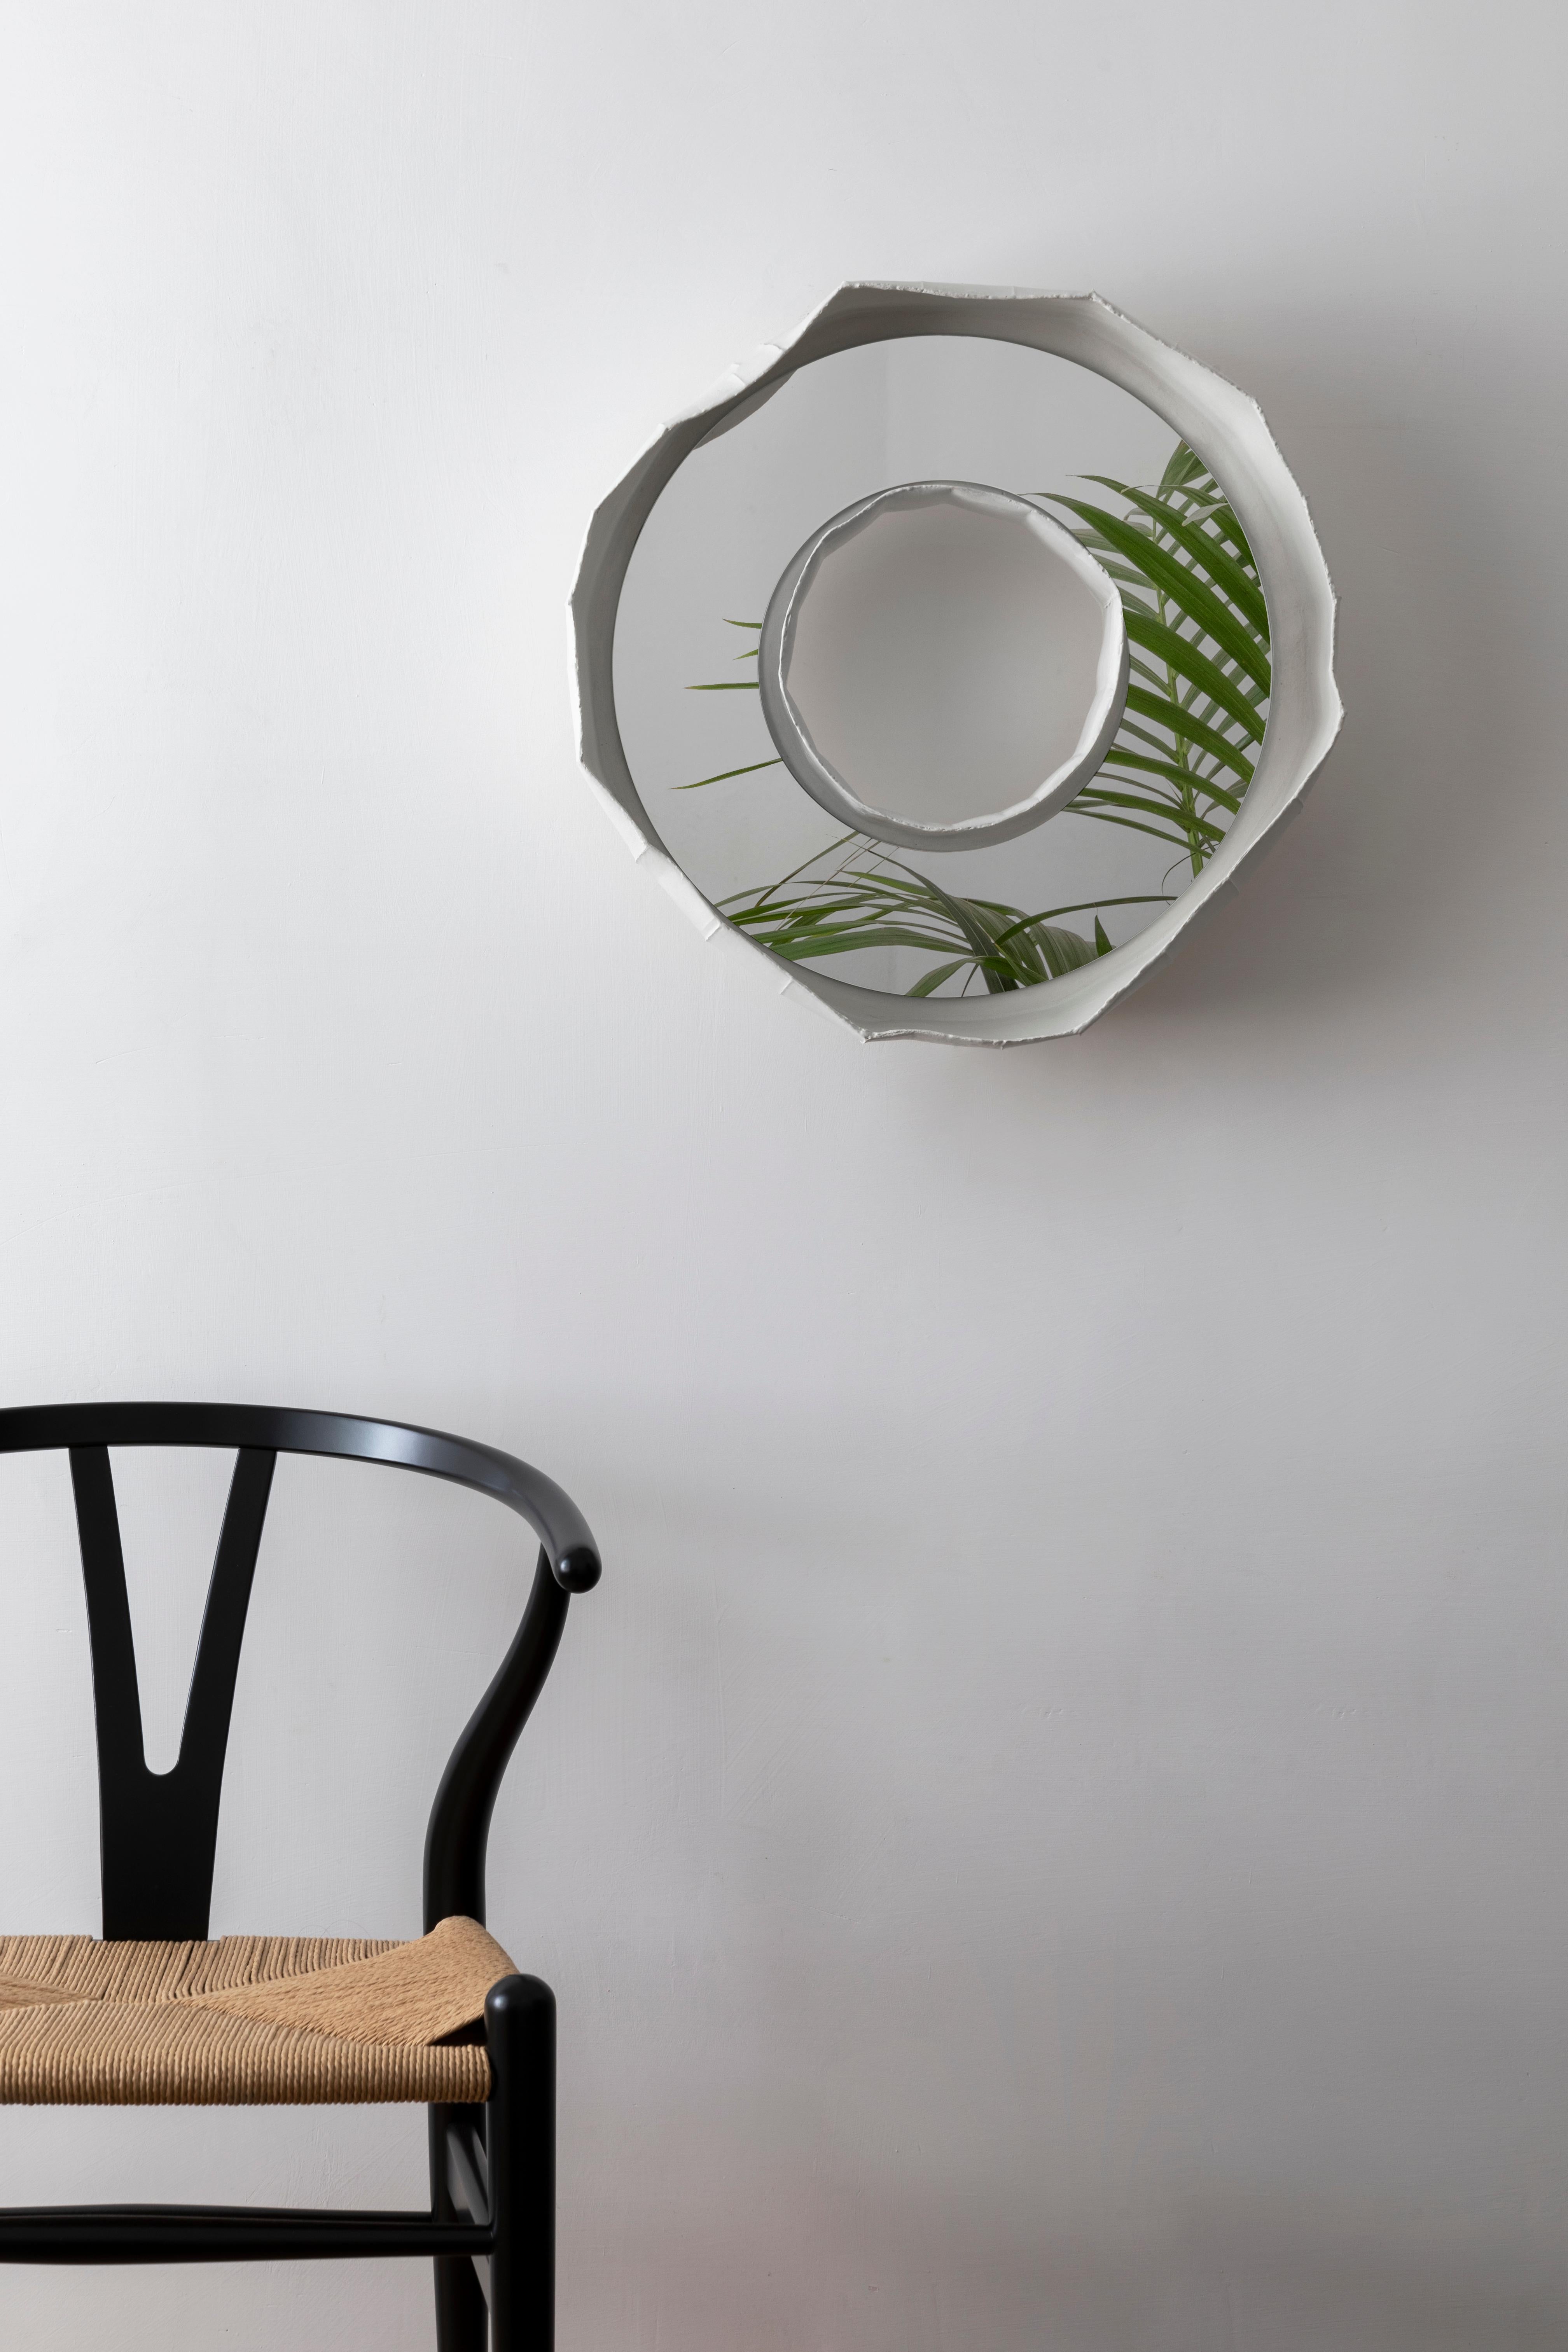 RING NOVA, un étonnant miroir en céramique fabriqué à la main en Italie, l'un des 2 modèles qui composent la collection REFLECTIONS, fruit d'une collaboration entre l'artiste Paola Paronetto et le designer Giovanni Botticelli, qui intègre la